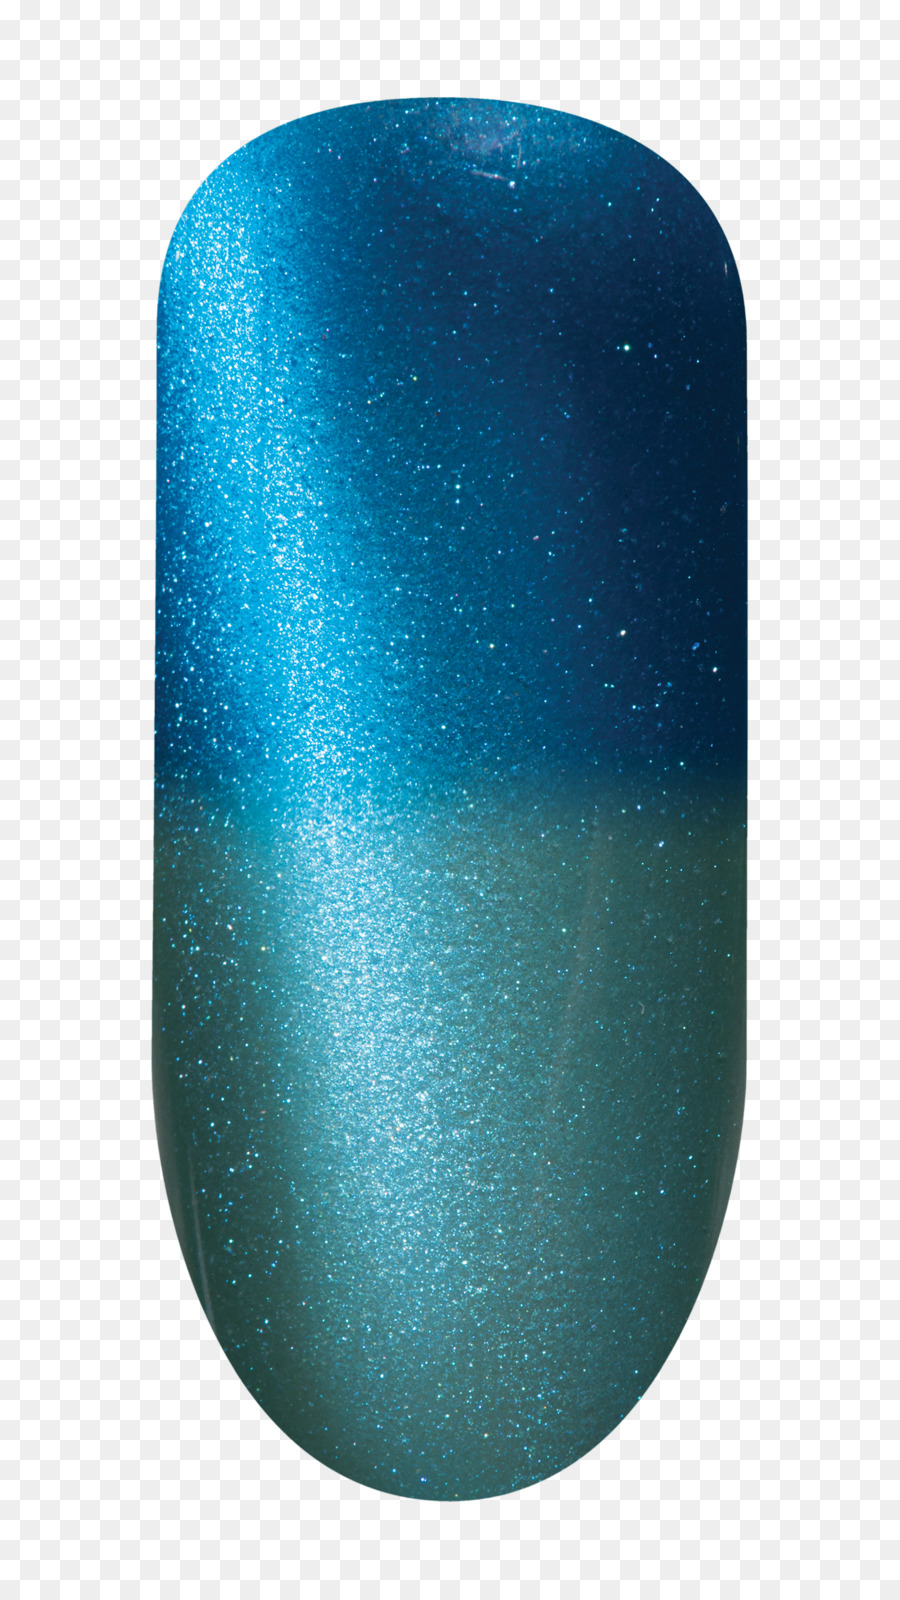 Glitter Aqua